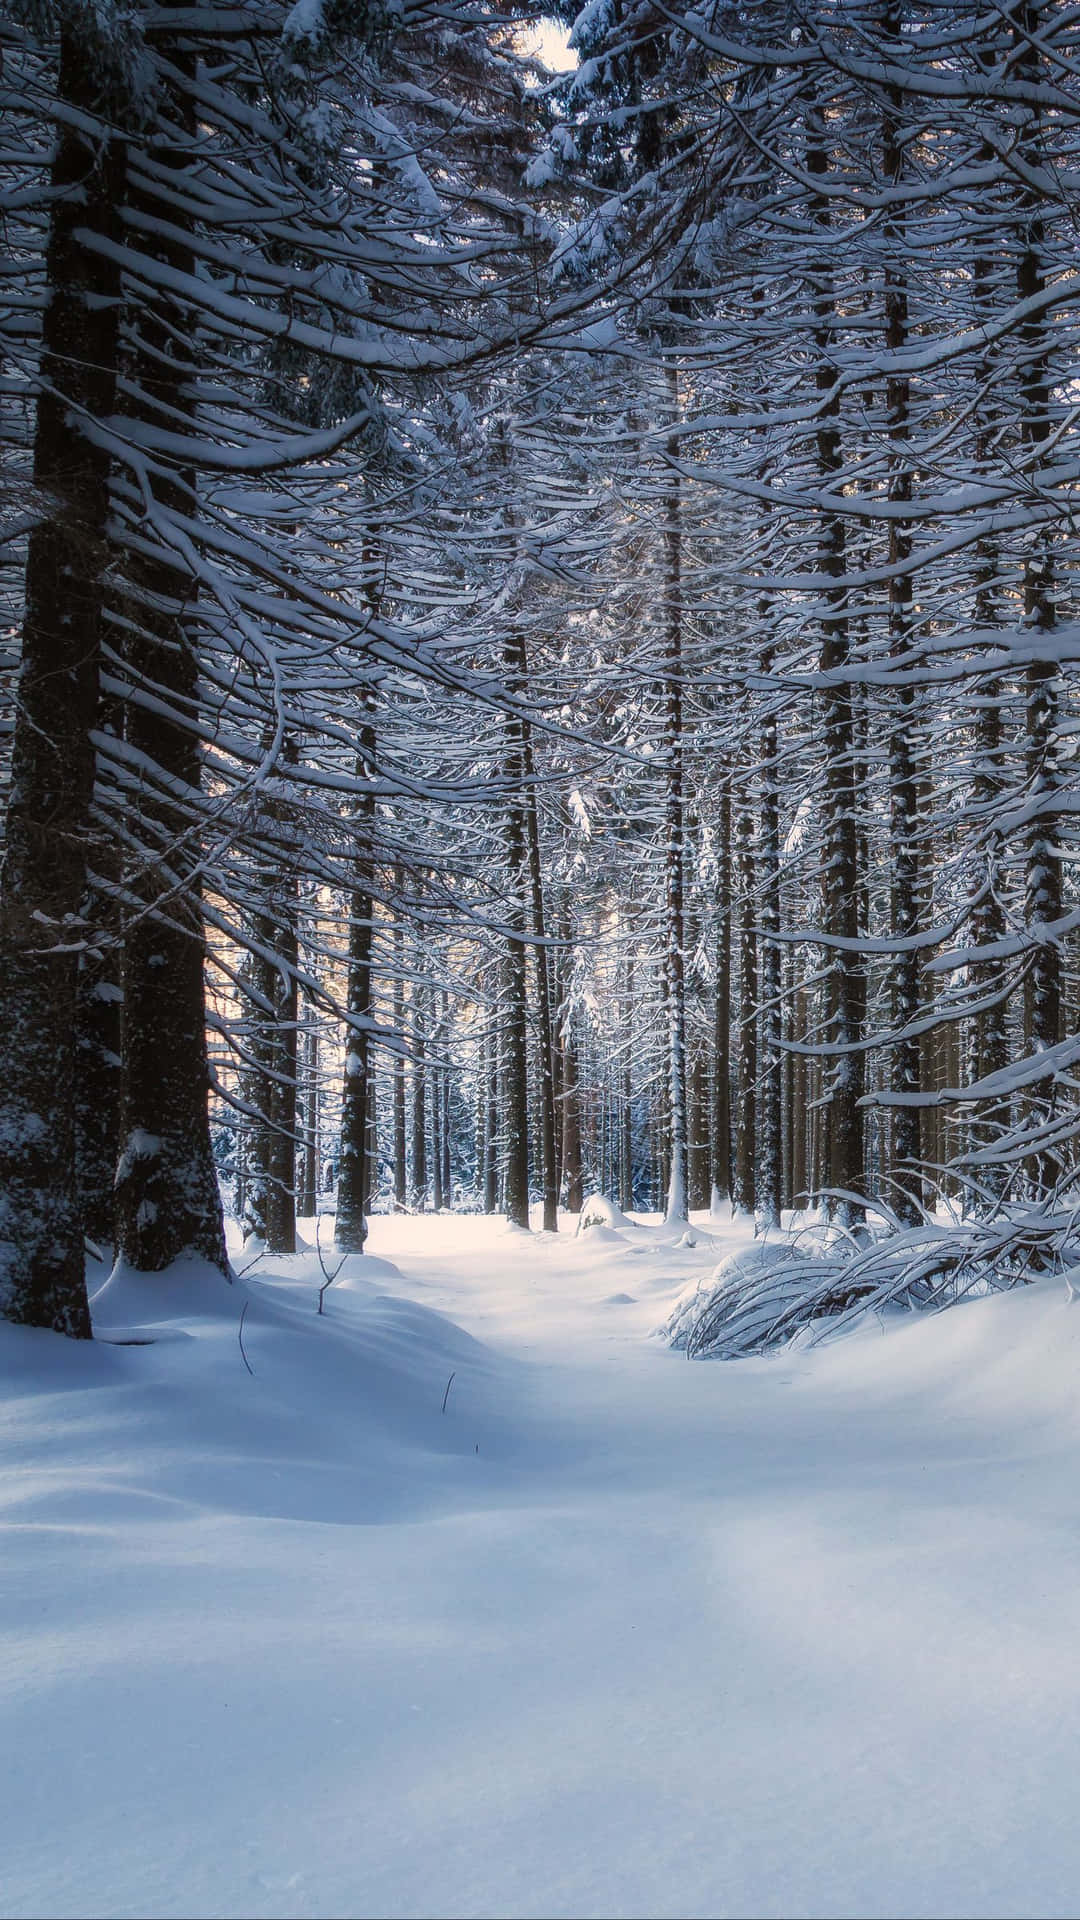 Adéntrateen El Maravilloso Paisaje Invernal De Un Bosque Nevado.